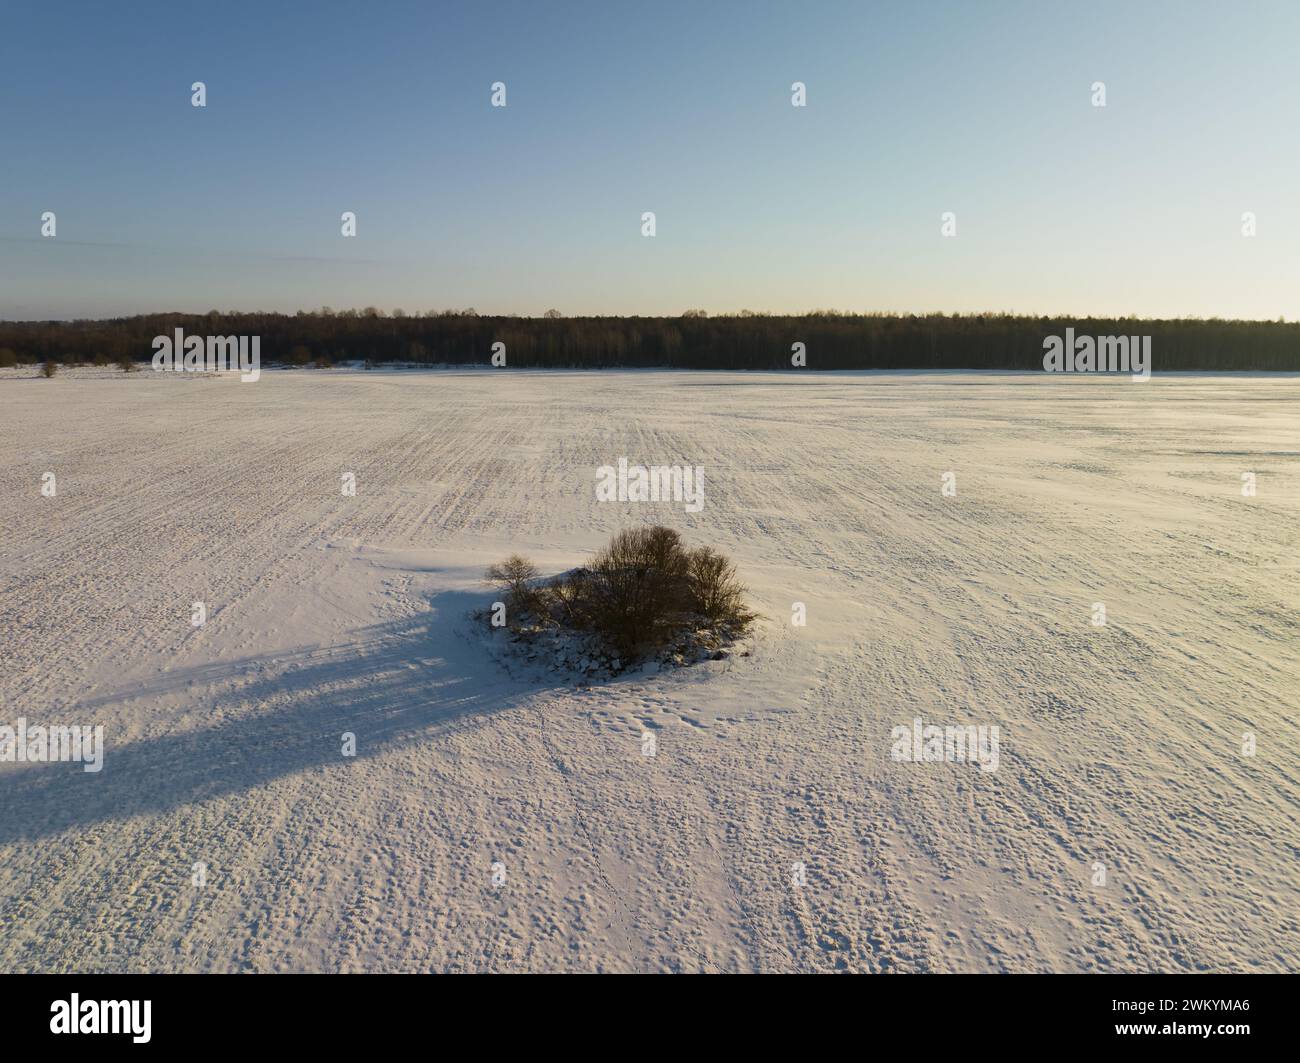 Nature de l'Estonie aux couleurs du drapeau national, ciel bleu, forêt sombre et champ blanc. Drone photo. Photo de haute qualité Banque D'Images